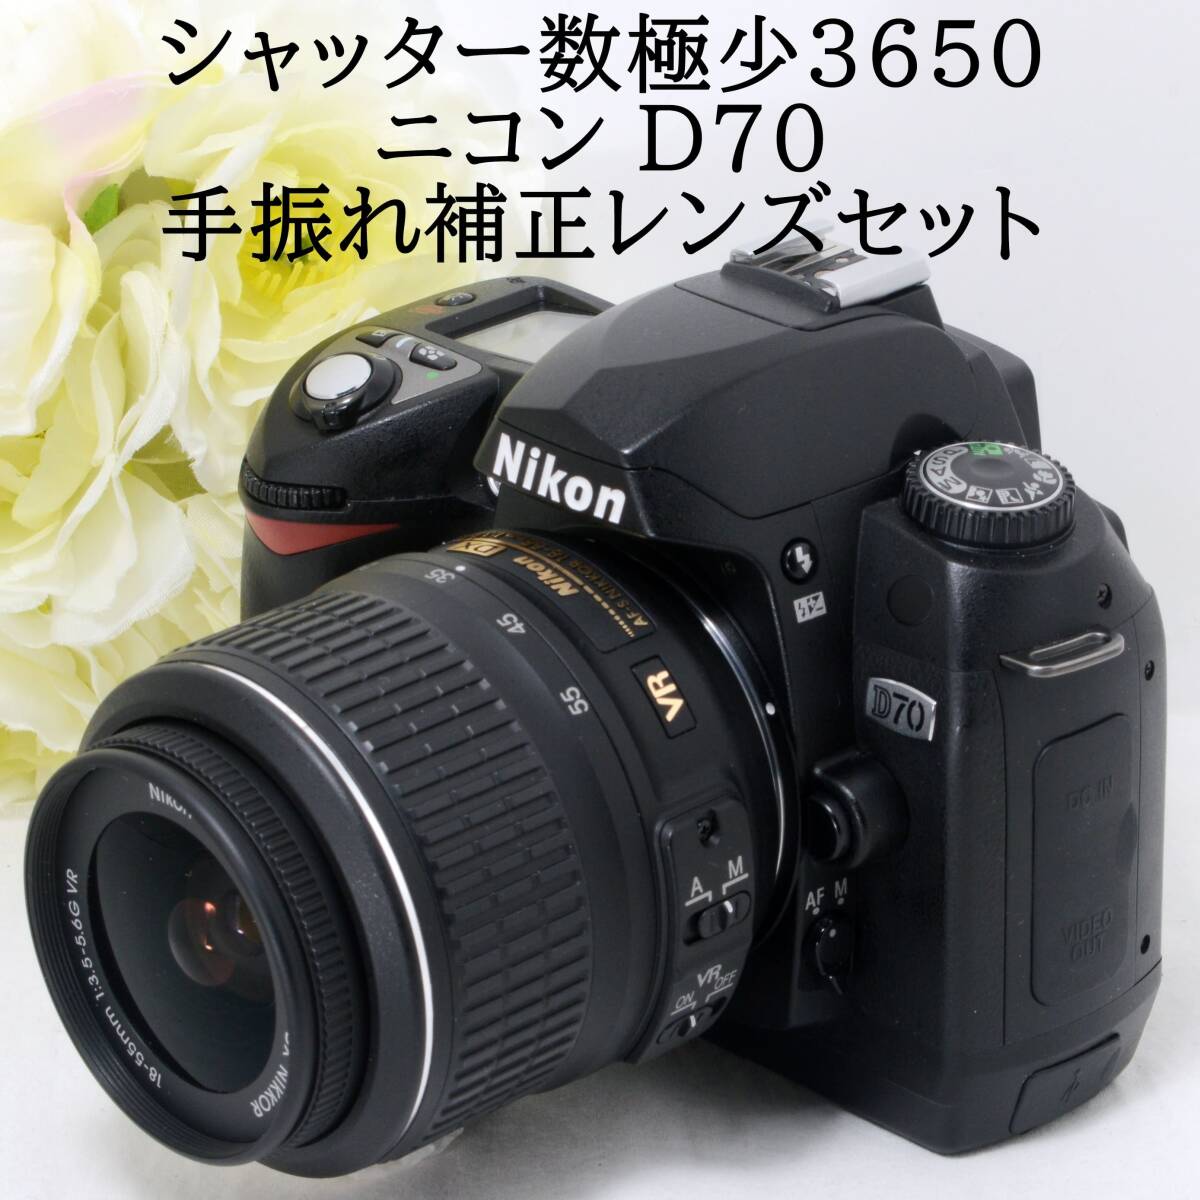 デジタル一眼レフカメラ入門機に Nikon ニコン D70 AF-S 18-55mm VR 